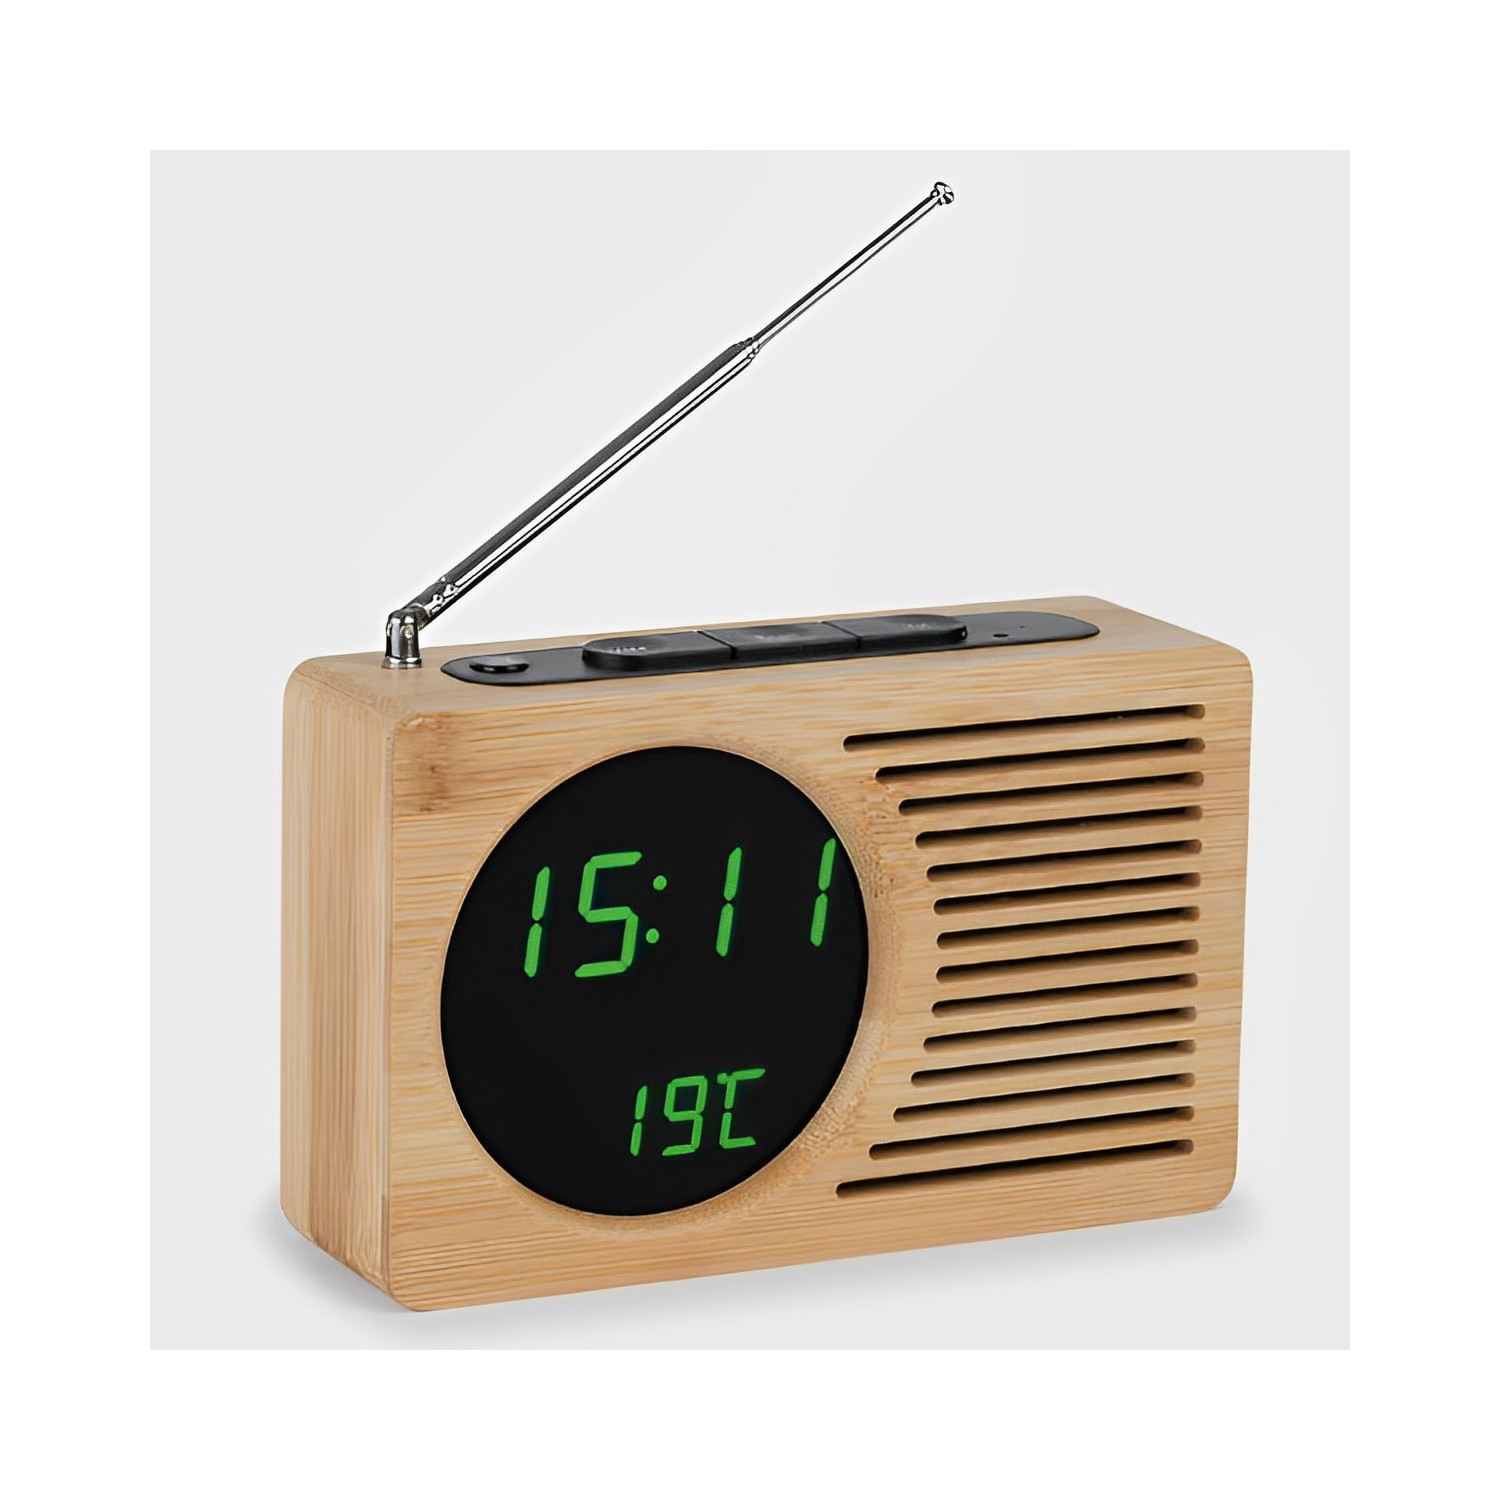 Réveil Radio FM couleur bois, affichage LED vert, alarme, date, heure